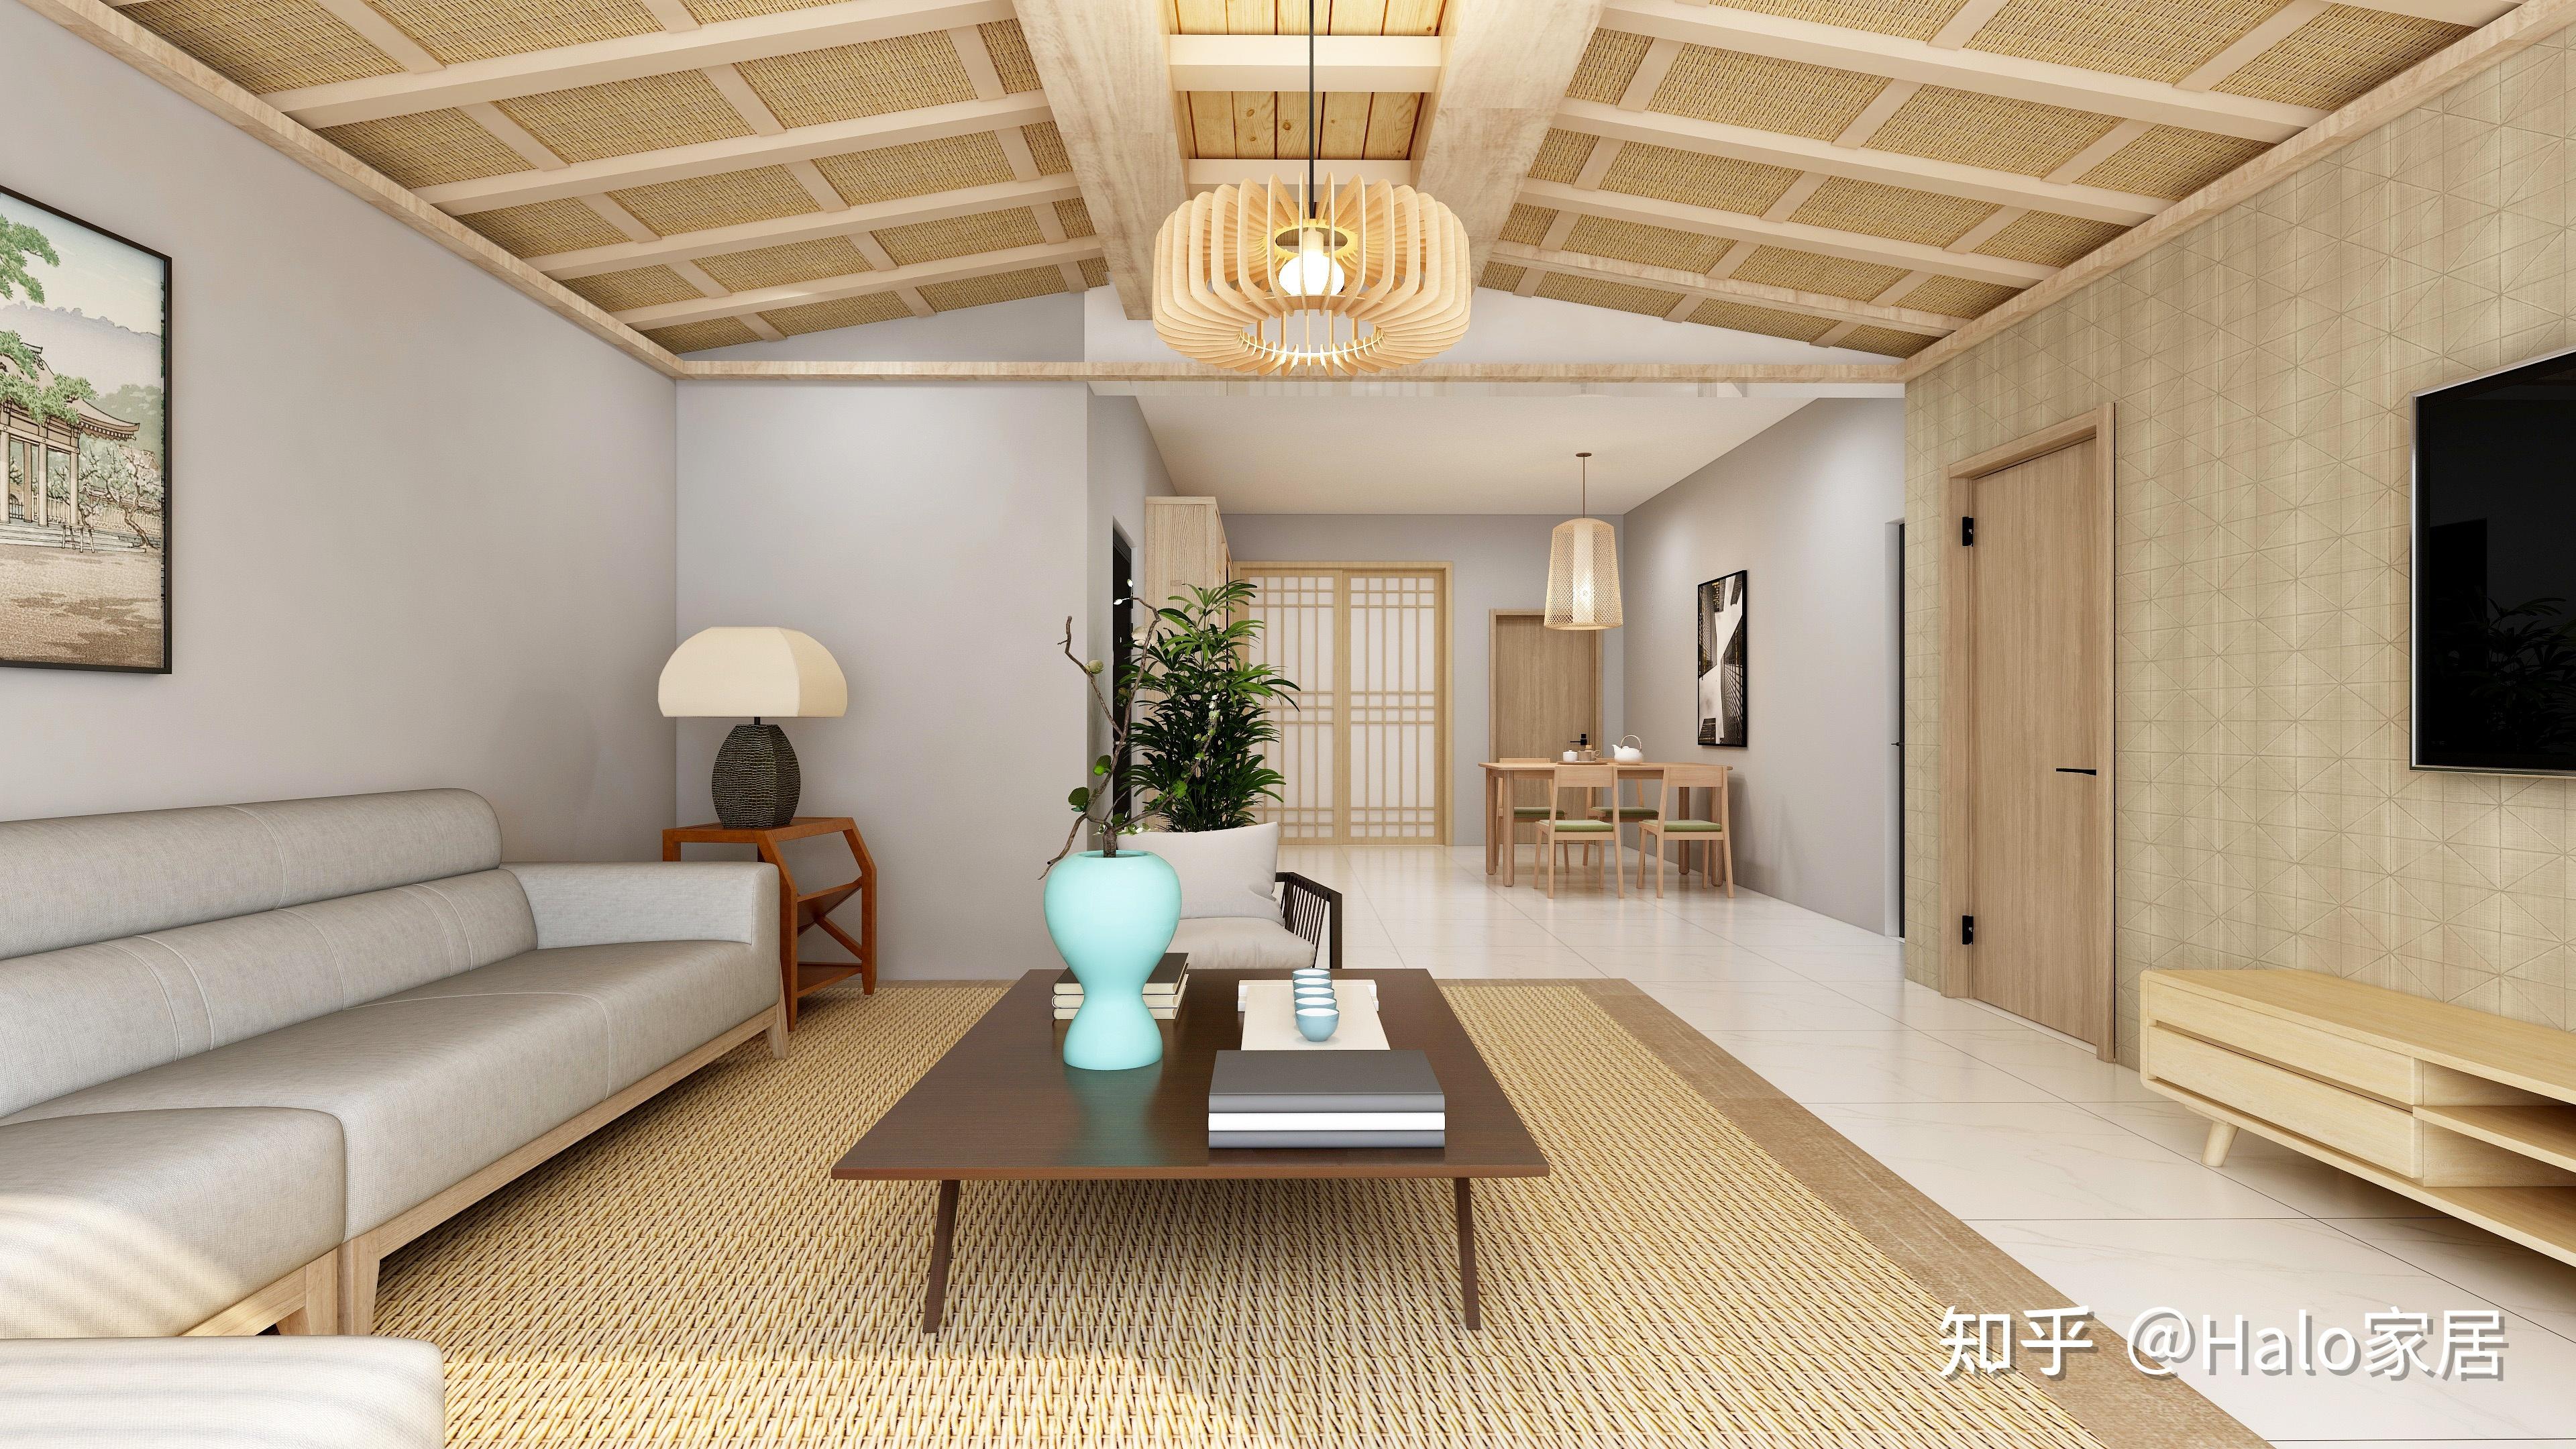 家具低矮且不多,给人以宽敞明亮的感觉日式格子拉门的设计使空间看